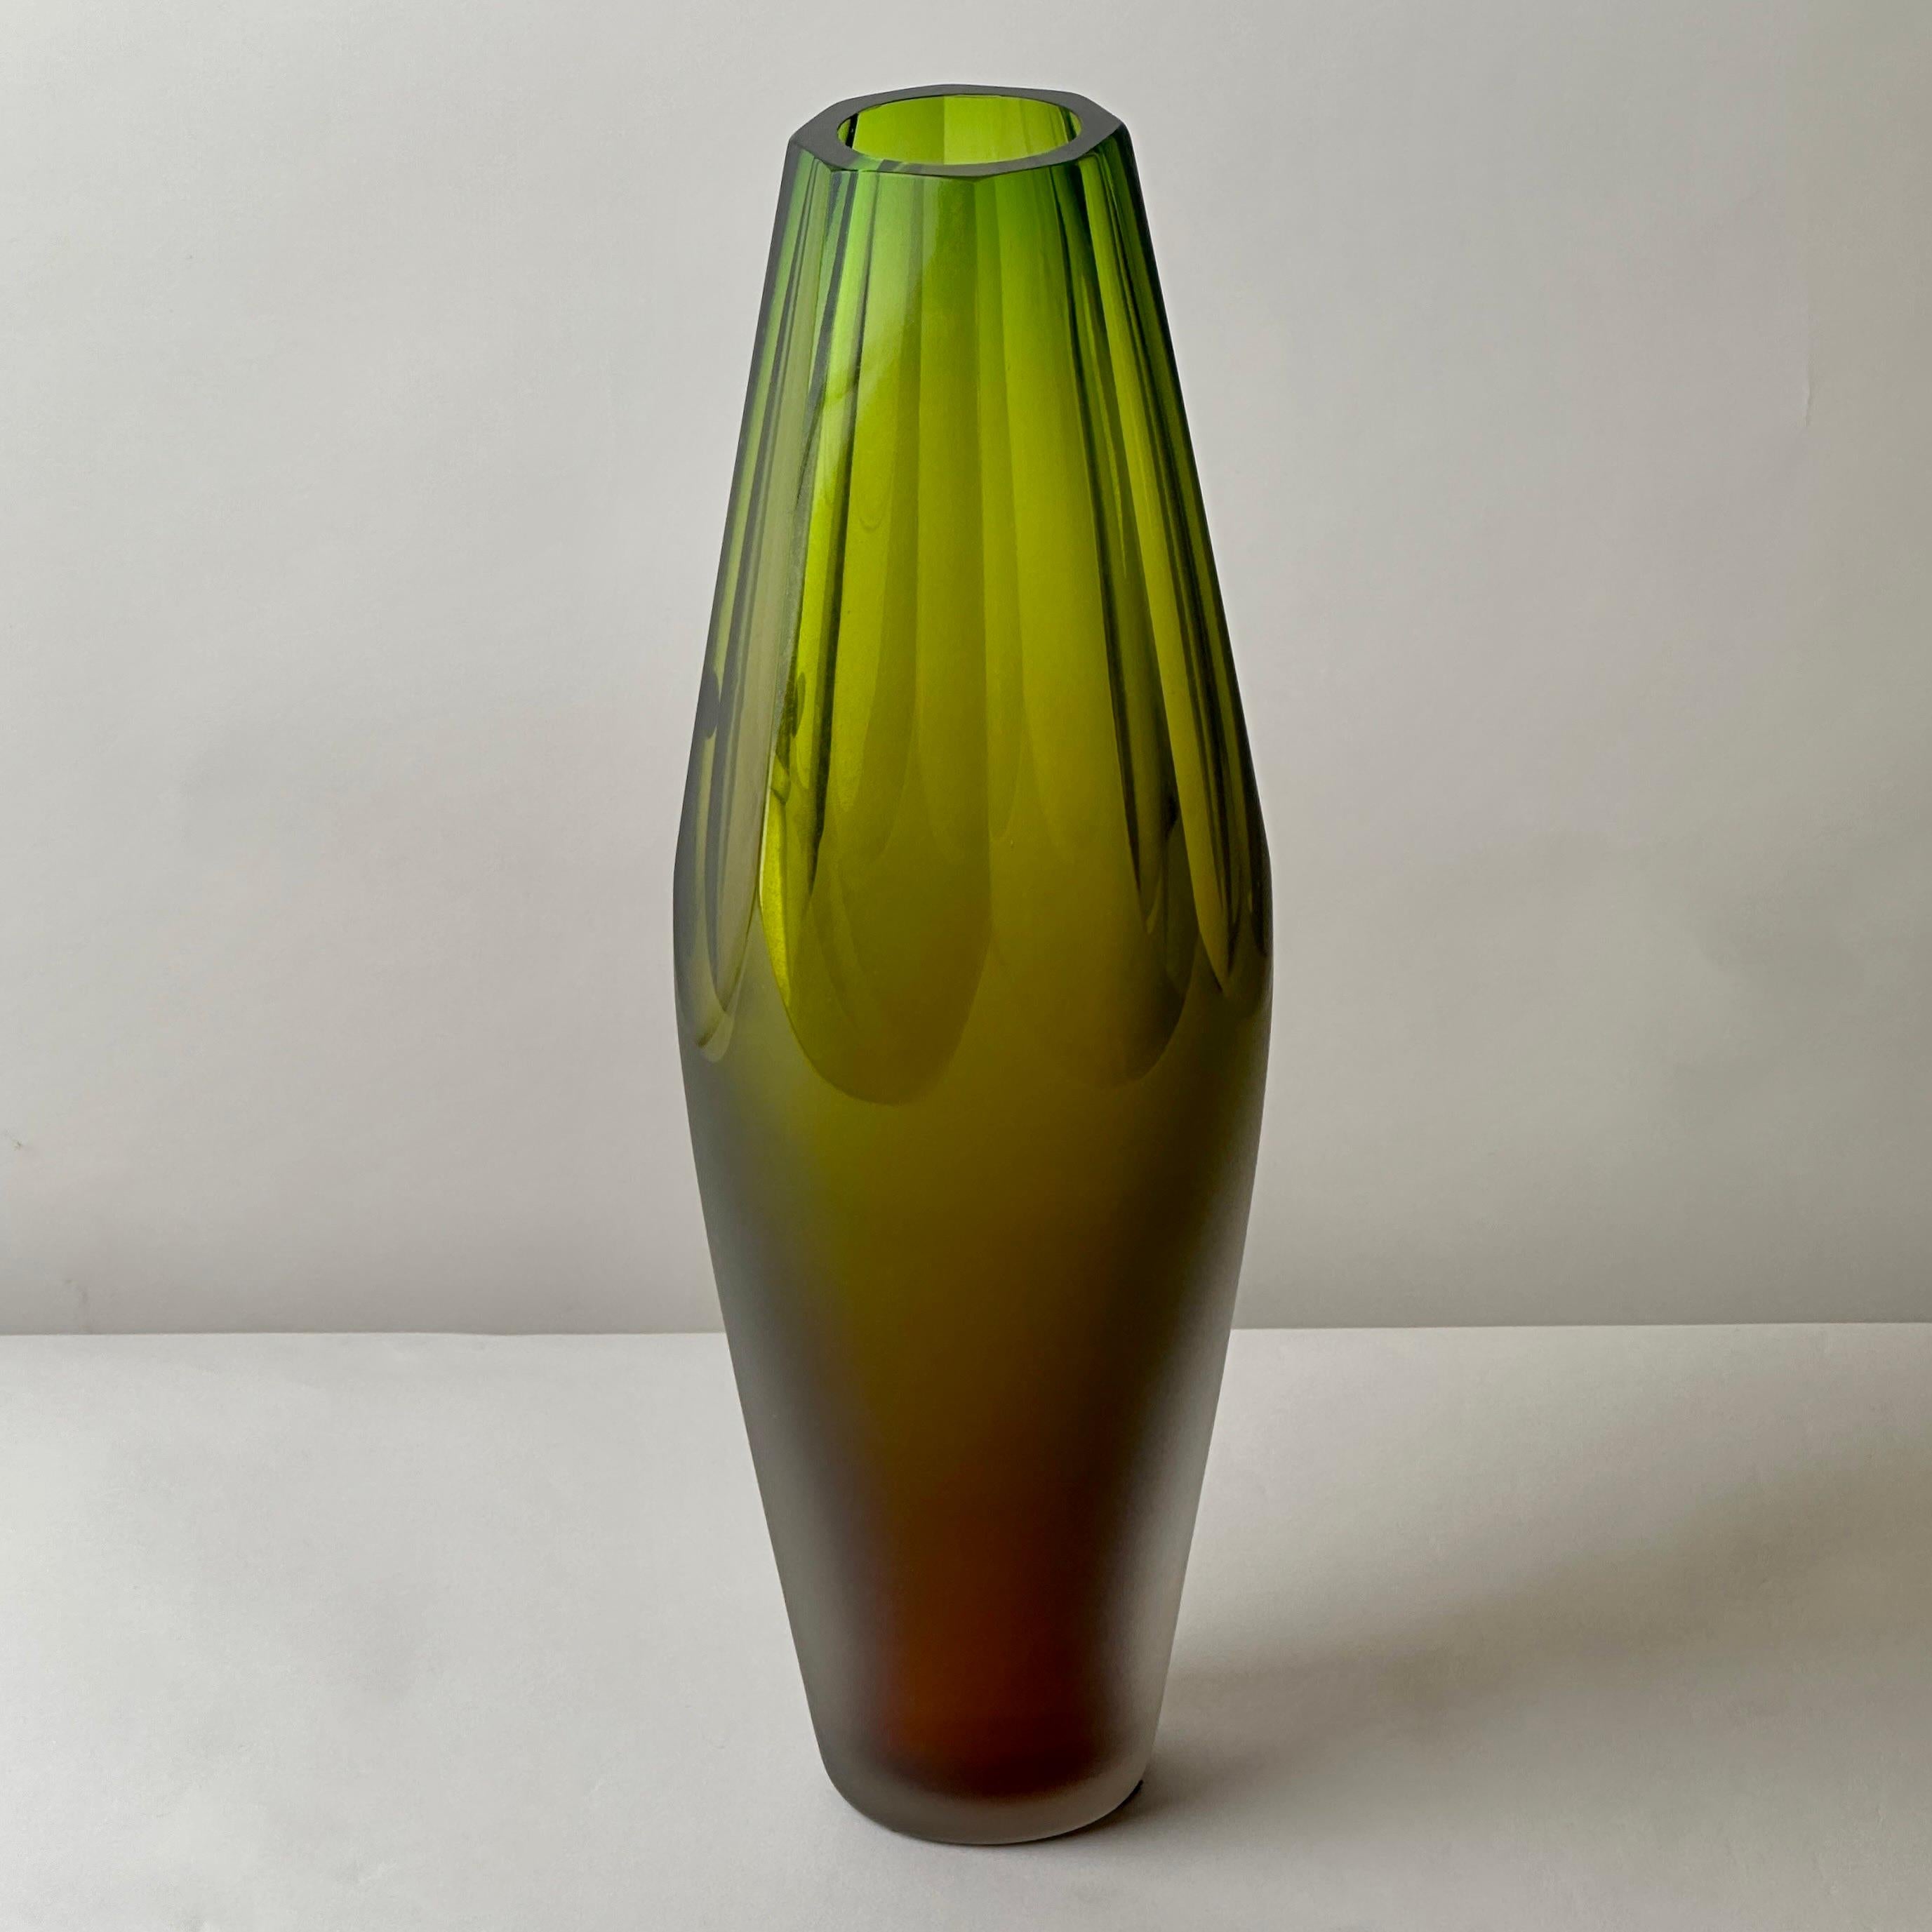 Vase moderne et élégant en verre de Murano facetté à la main avec une teinte rougeâtre sur le fond du vase. 
Signé à la main par le fabricant de Murano sous le fond.

À propos de la Vetreria Artistica Vivarini :

La verrerie Vivarini a été créée en